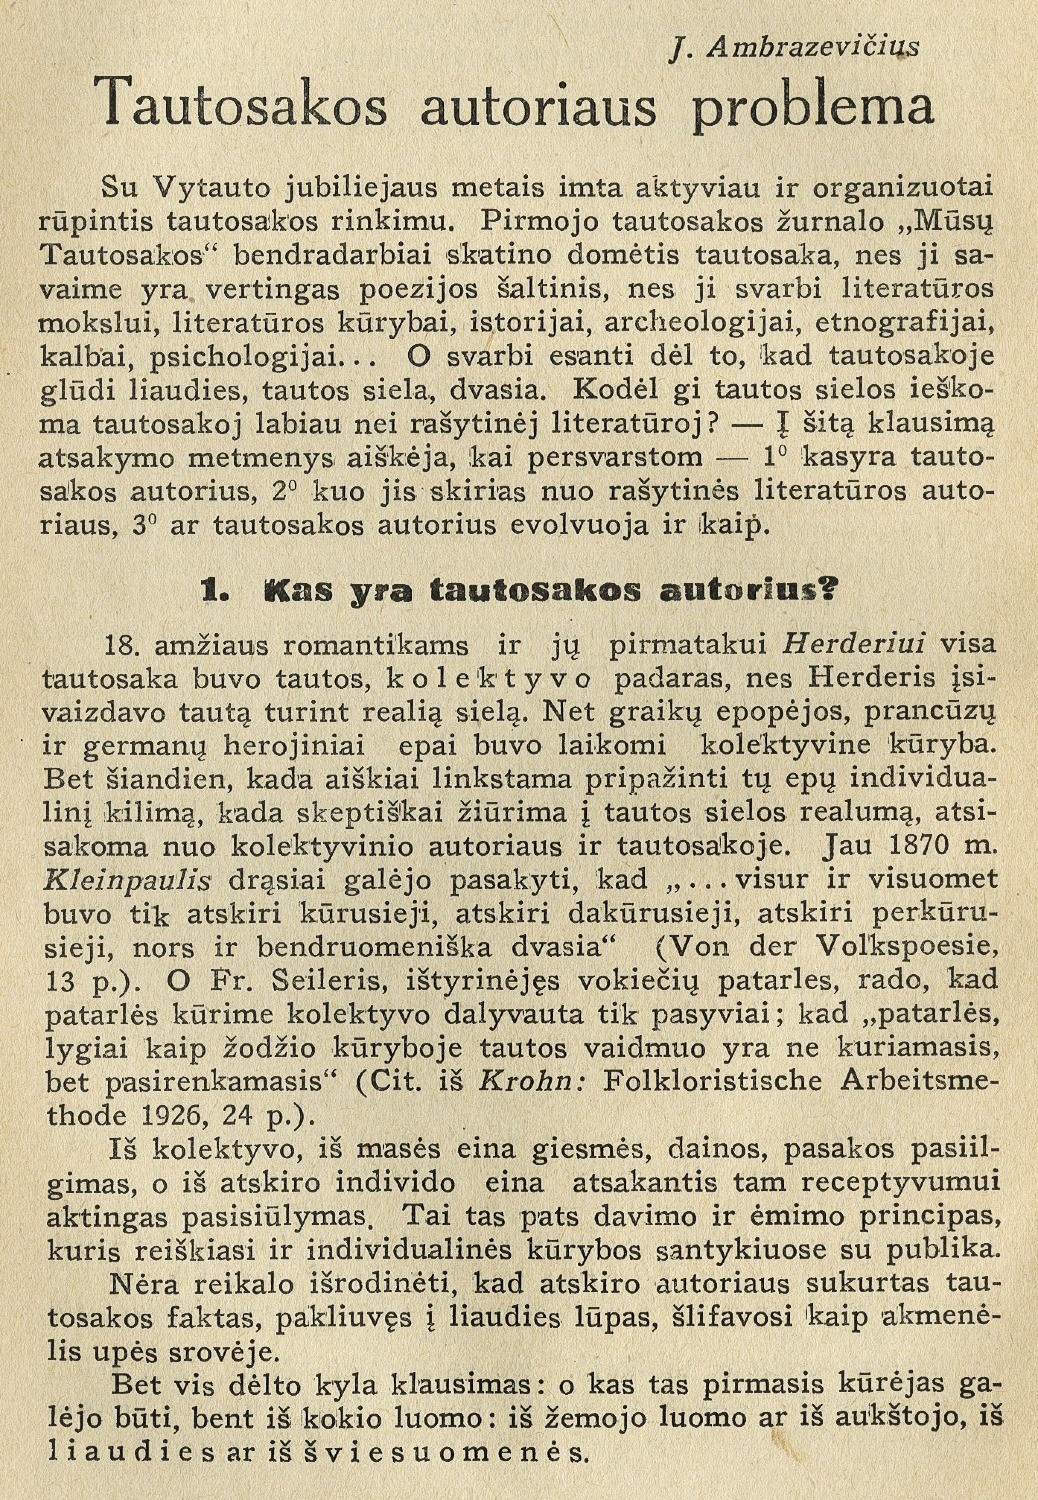 Stiliaus kultūra / J. Ambrazevičius // Židinys. – 1934, Nr. 8/9, p. 121–124.